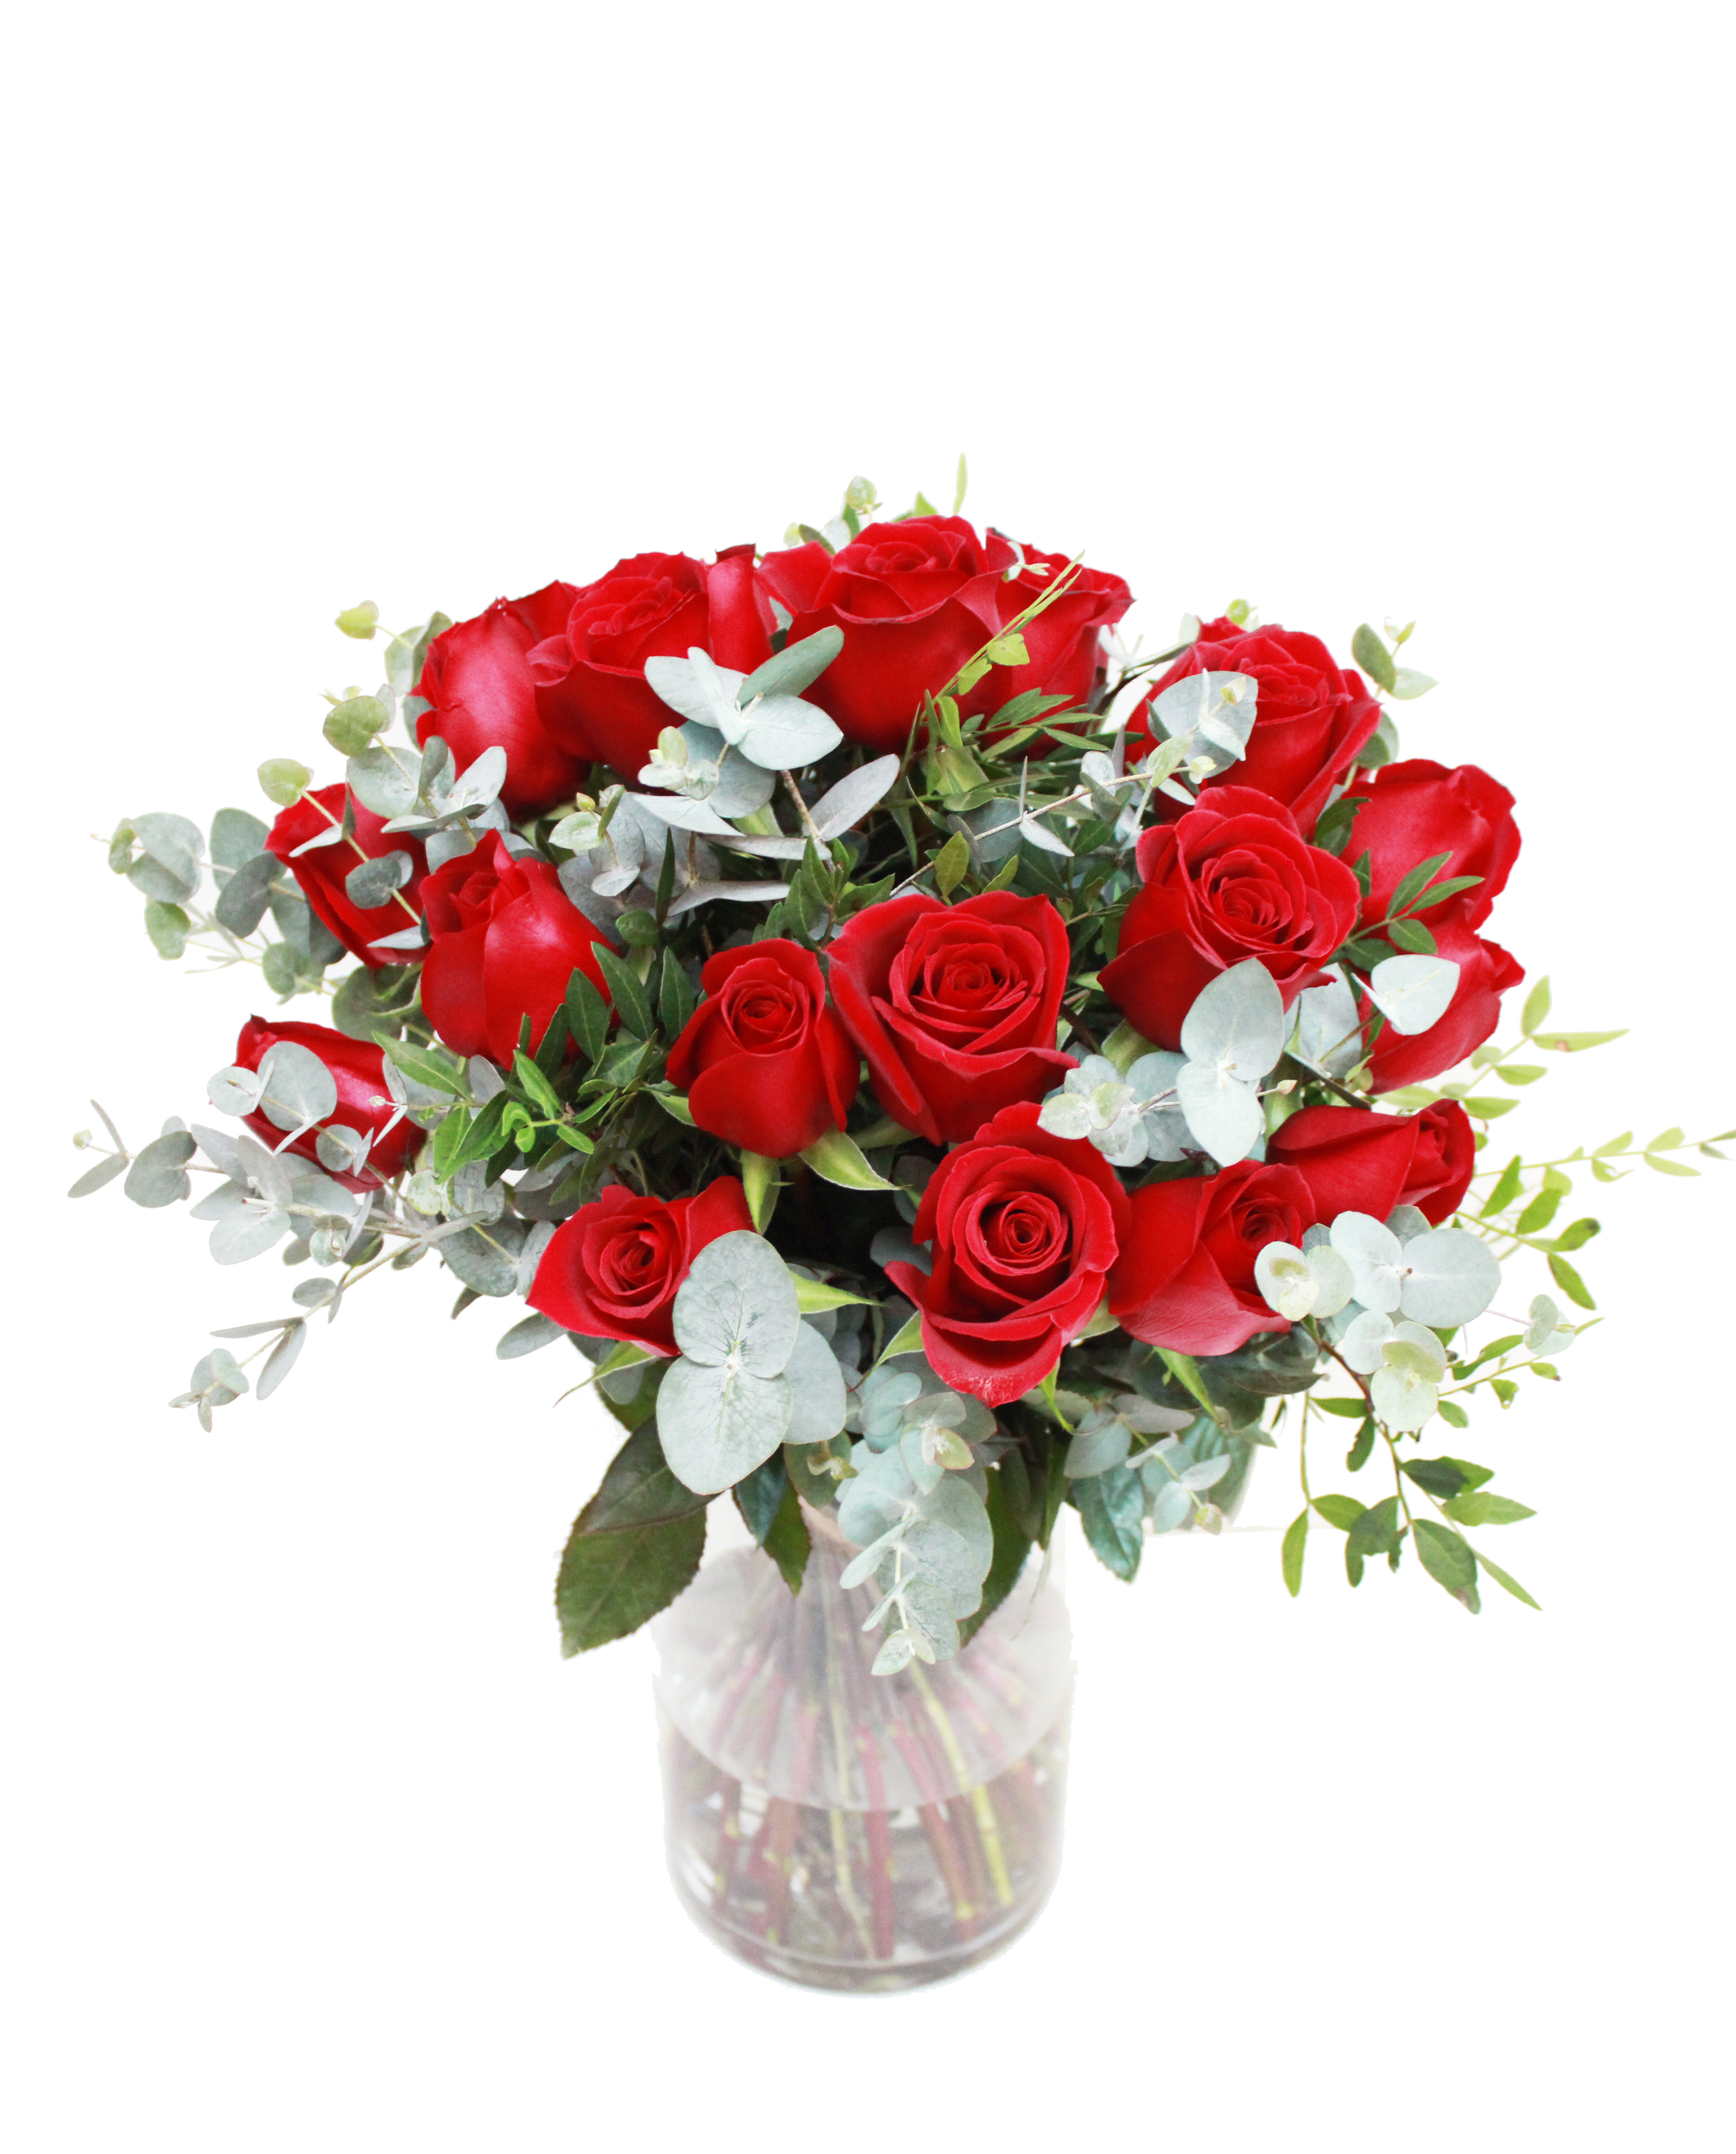 11 Great Victorian Flower Vase 2024 free download victorian flower vase of 24 red roses in vase regarding 24 red roses in vasev3